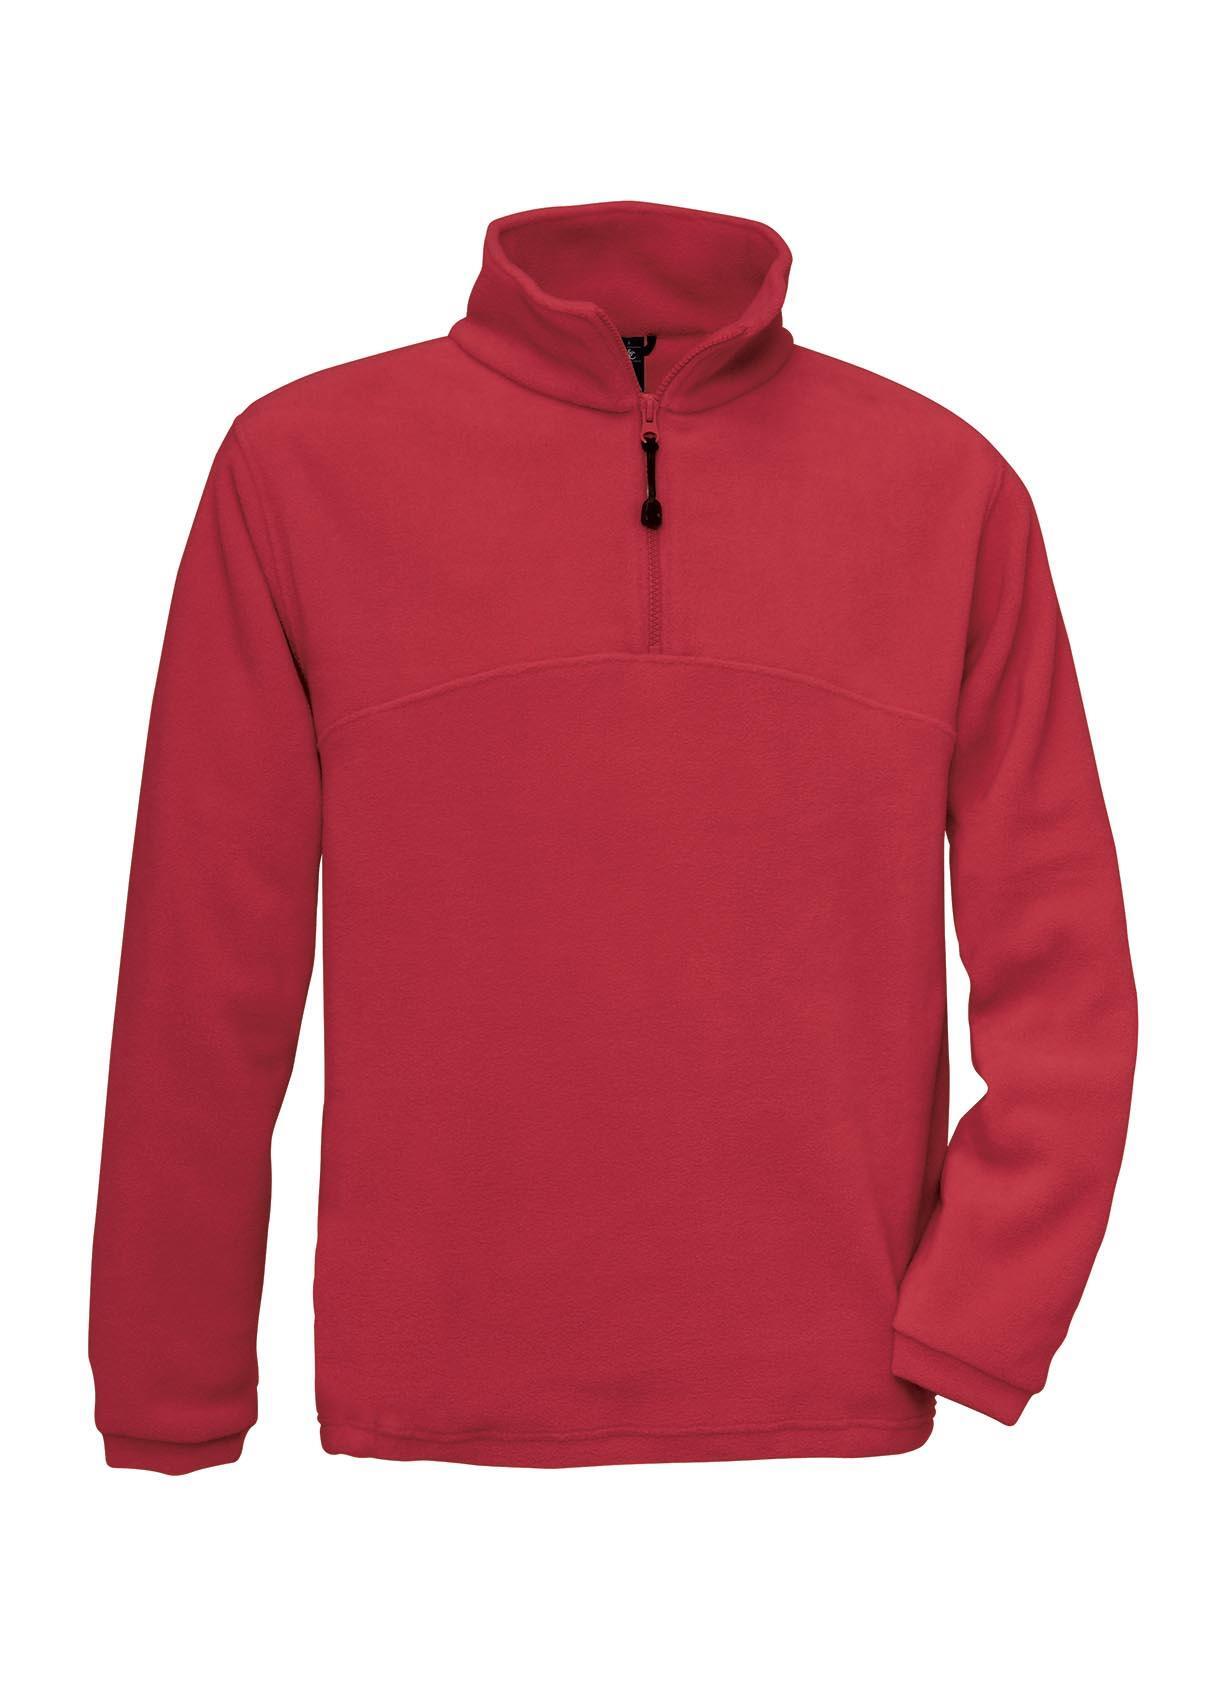 Fleece trui rood voor mannen te personaliseren